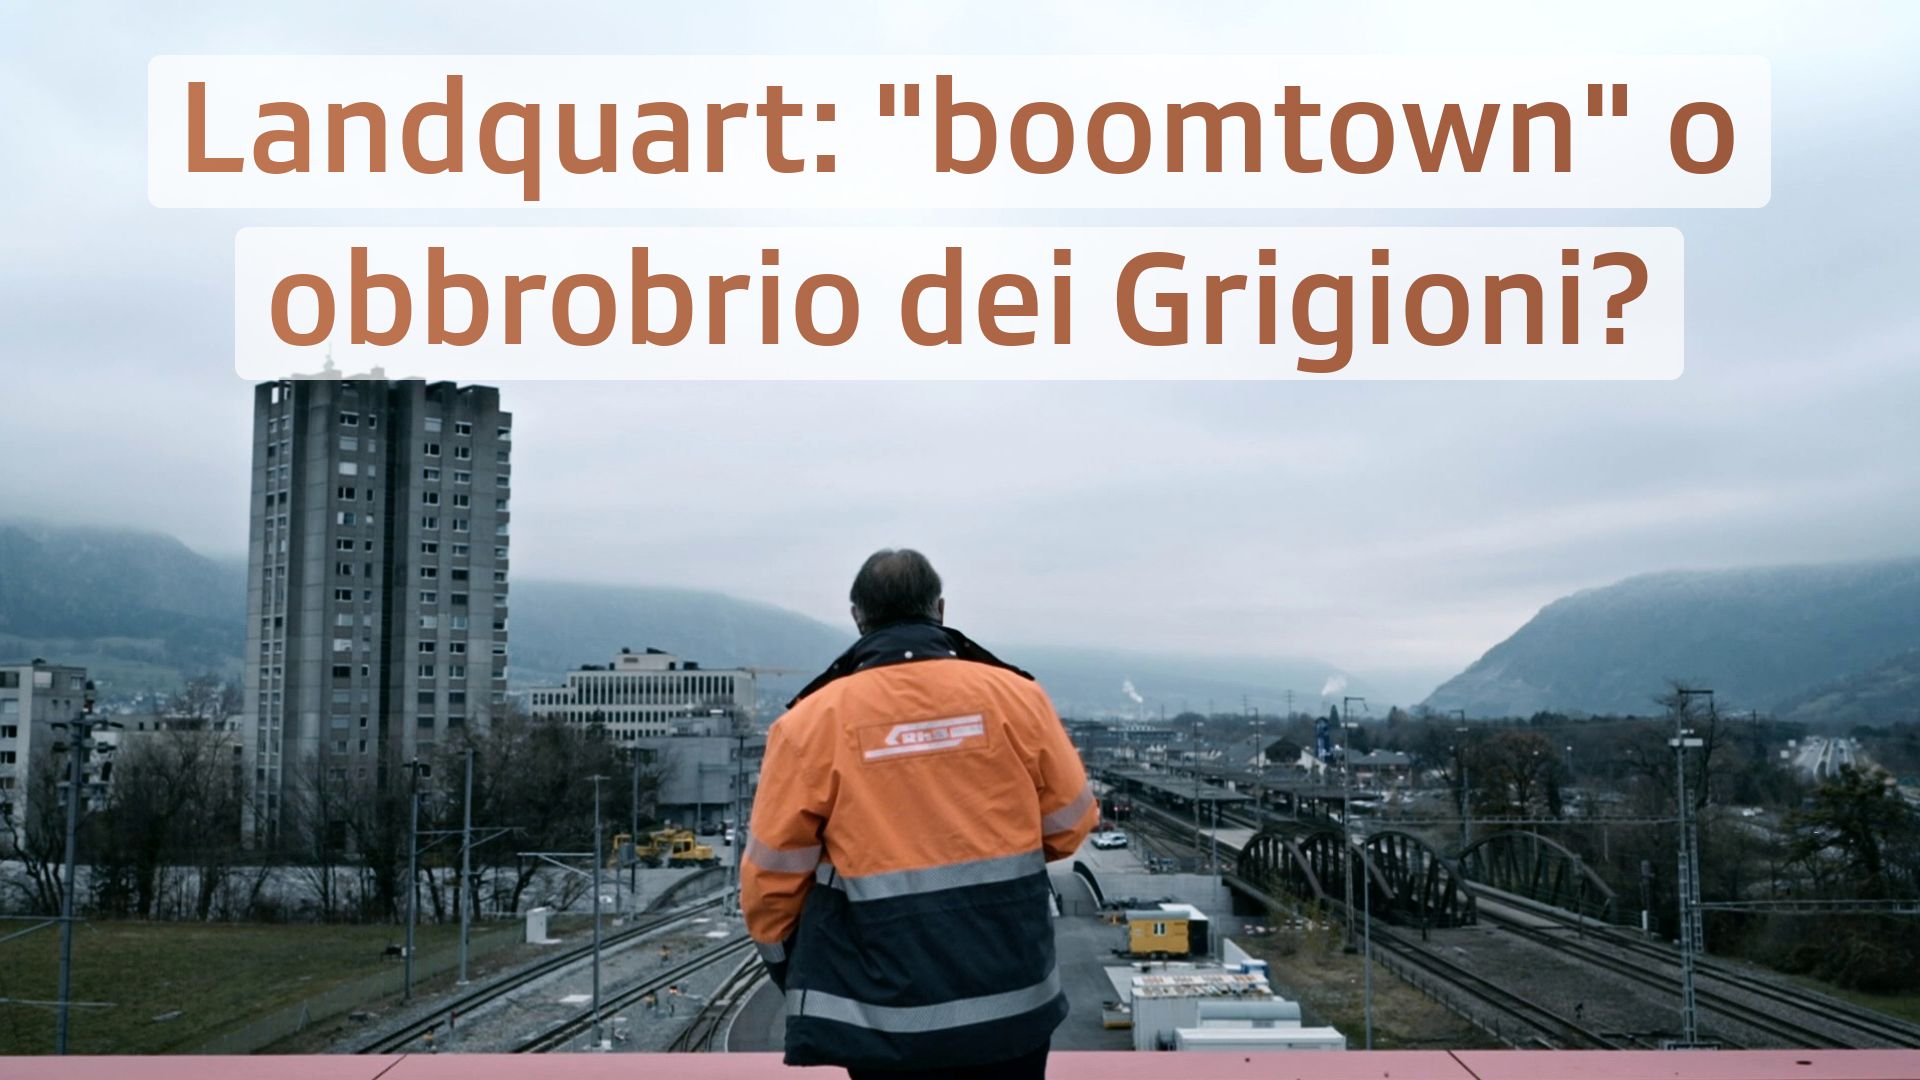 Landquart: "boomtown" o obbrobrio dei Grigioni?